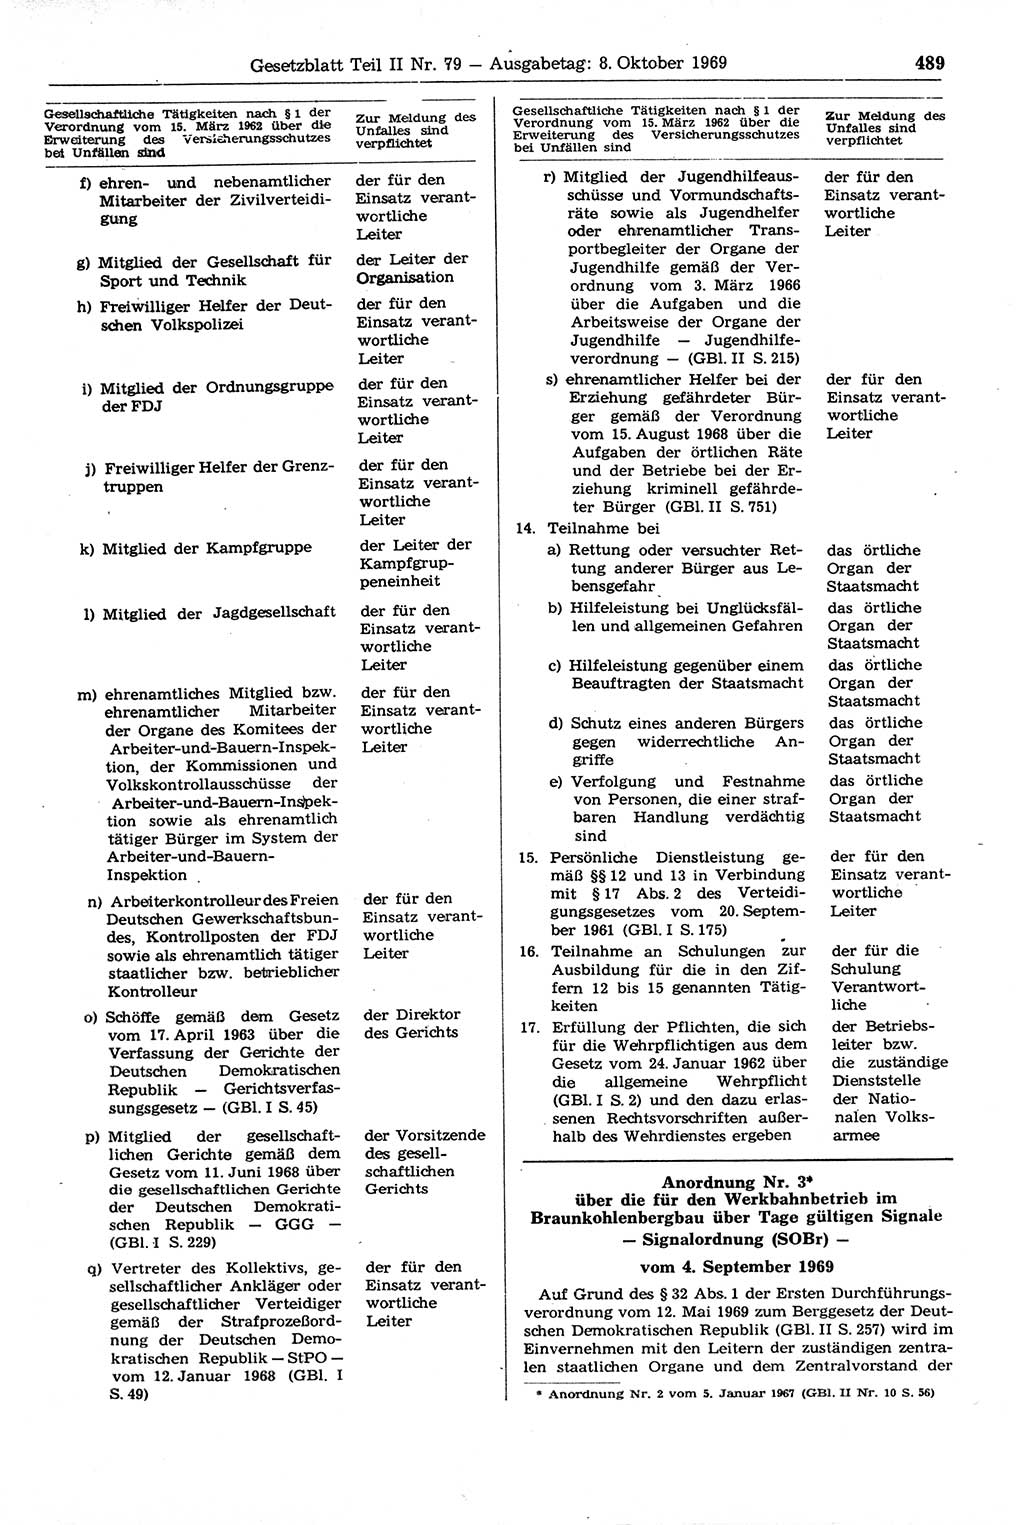 Gesetzblatt (GBl.) der Deutschen Demokratischen Republik (DDR) Teil ⅠⅠ 1969, Seite 489 (GBl. DDR ⅠⅠ 1969, S. 489)